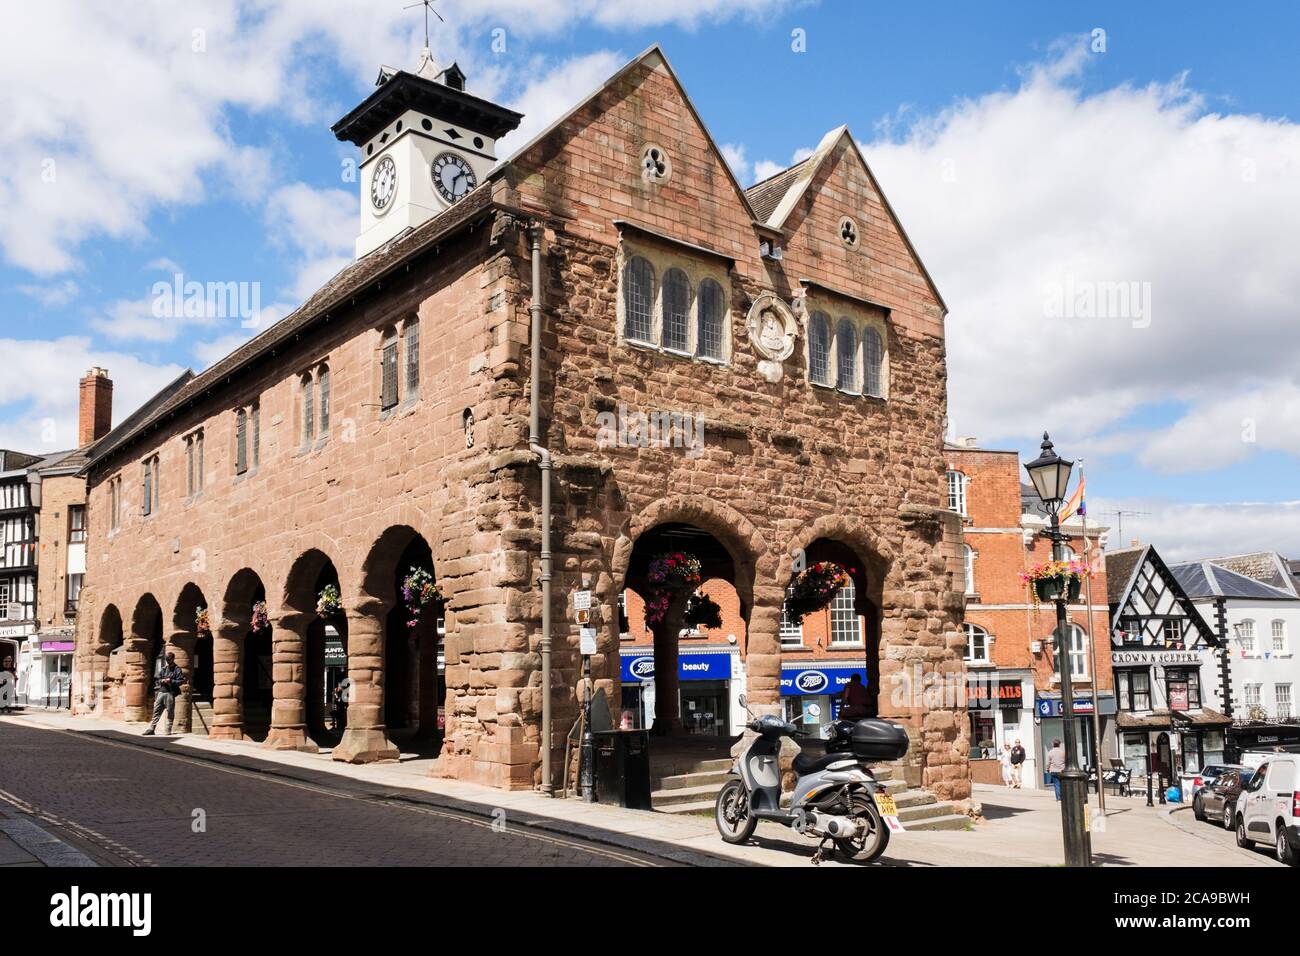 Das alte Markthaus aus dem 17. Jahrhundert wurde aus rotem Sandstein im Stadtzentrum erbaut. High Street, Ross on Wye, Herefordshire, England, Großbritannien Stockfoto